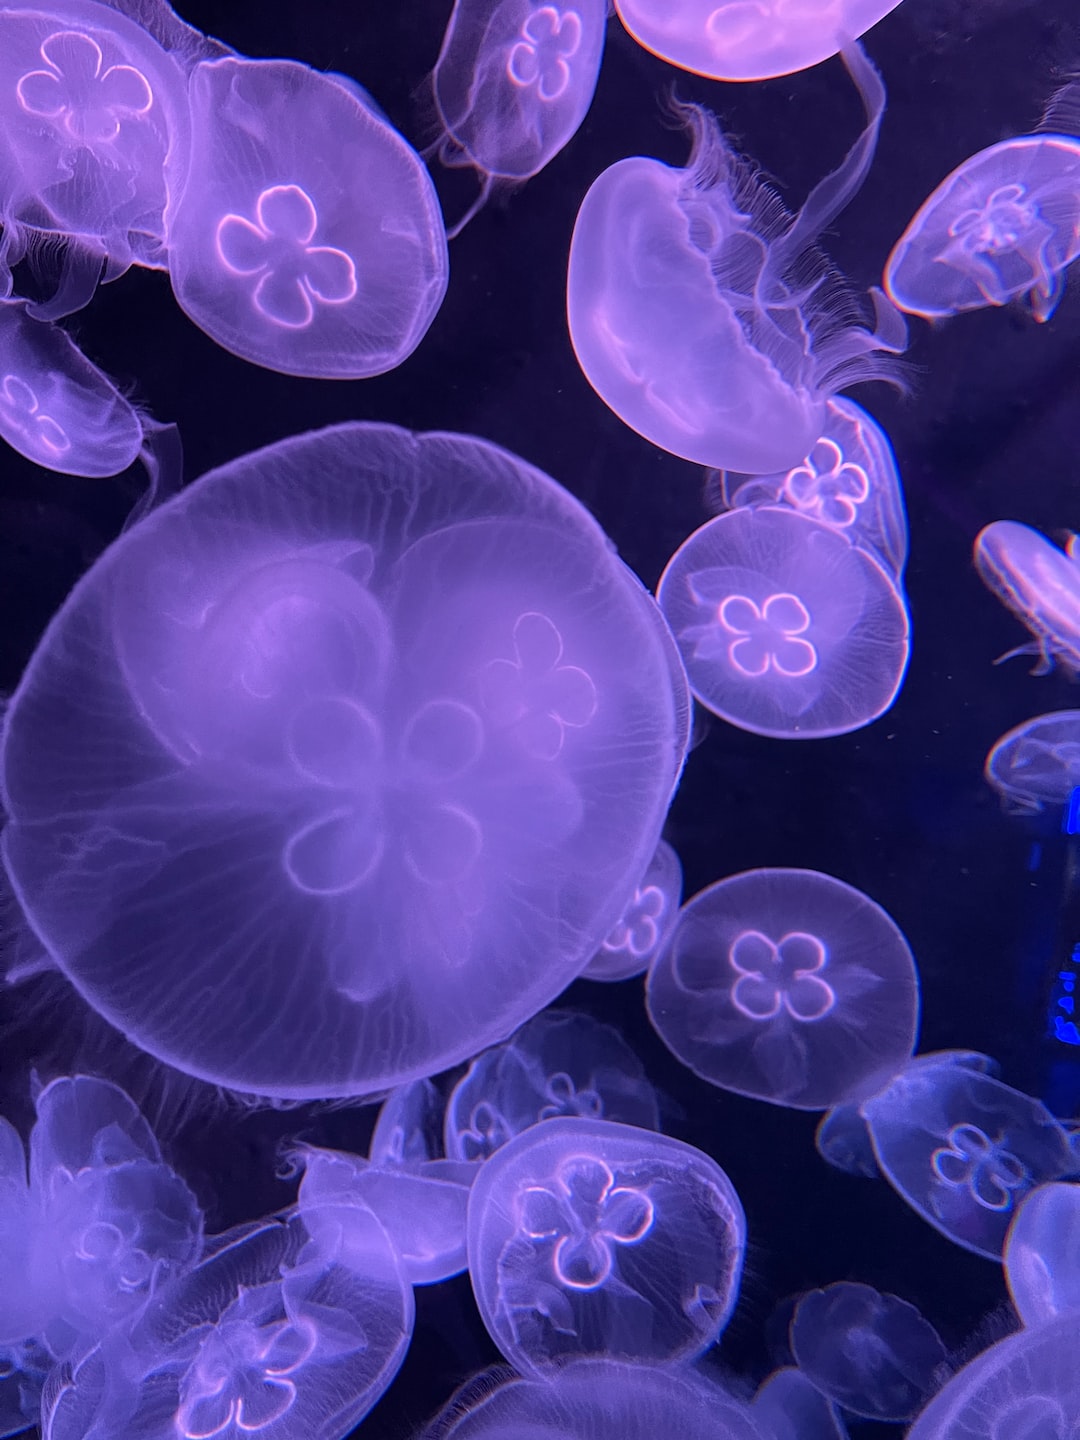 23 wichtige Fragen zu Wie Bekommen Fische Im Aquarium Sauerstoff?